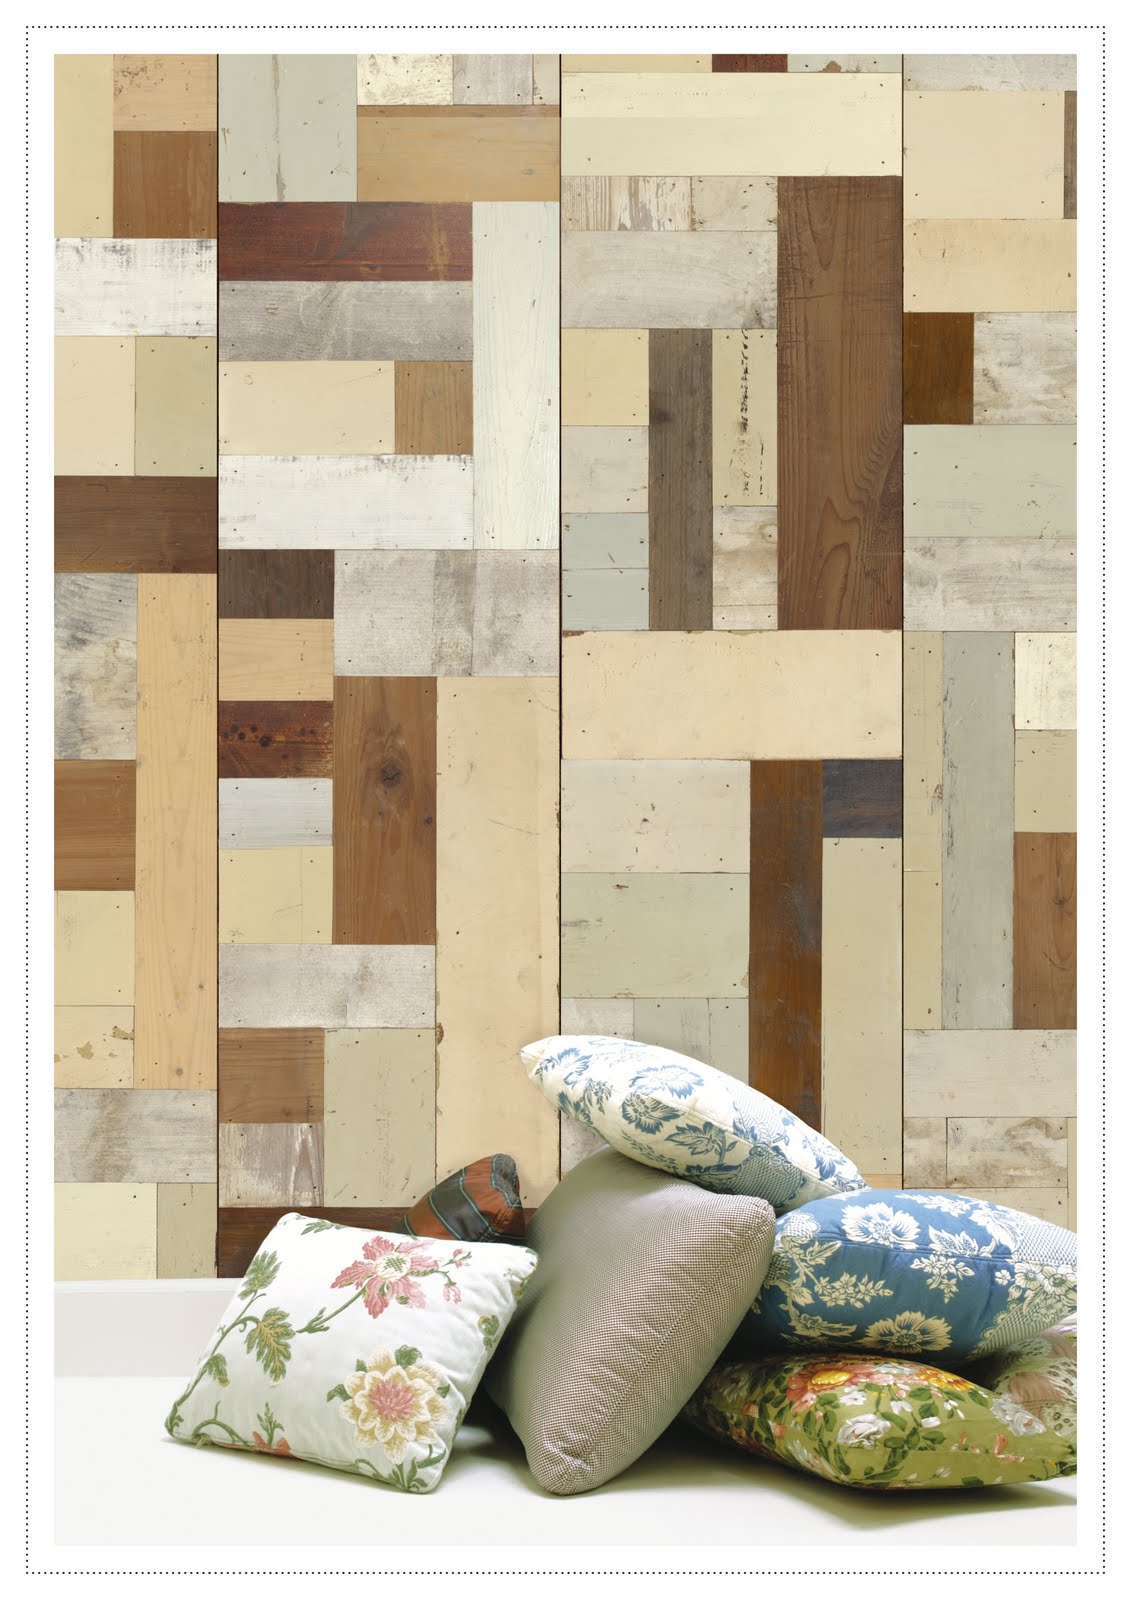 ... Interiors | Inspiring Design: Scrapwood wallpaper by Piet Hein Eek